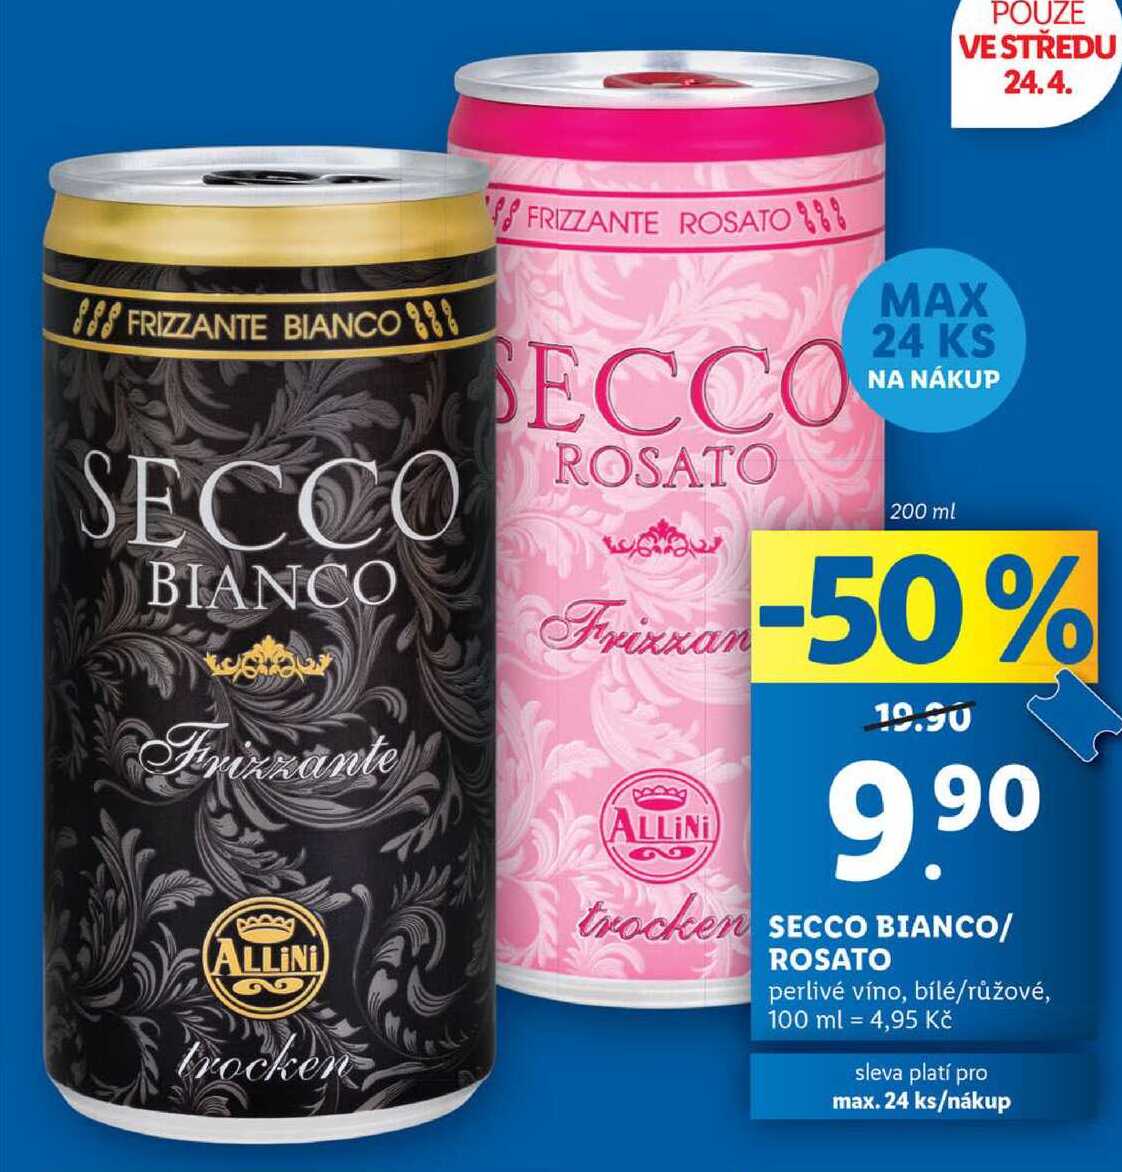 SECCO BIANCO/ROSATO, 200 ml